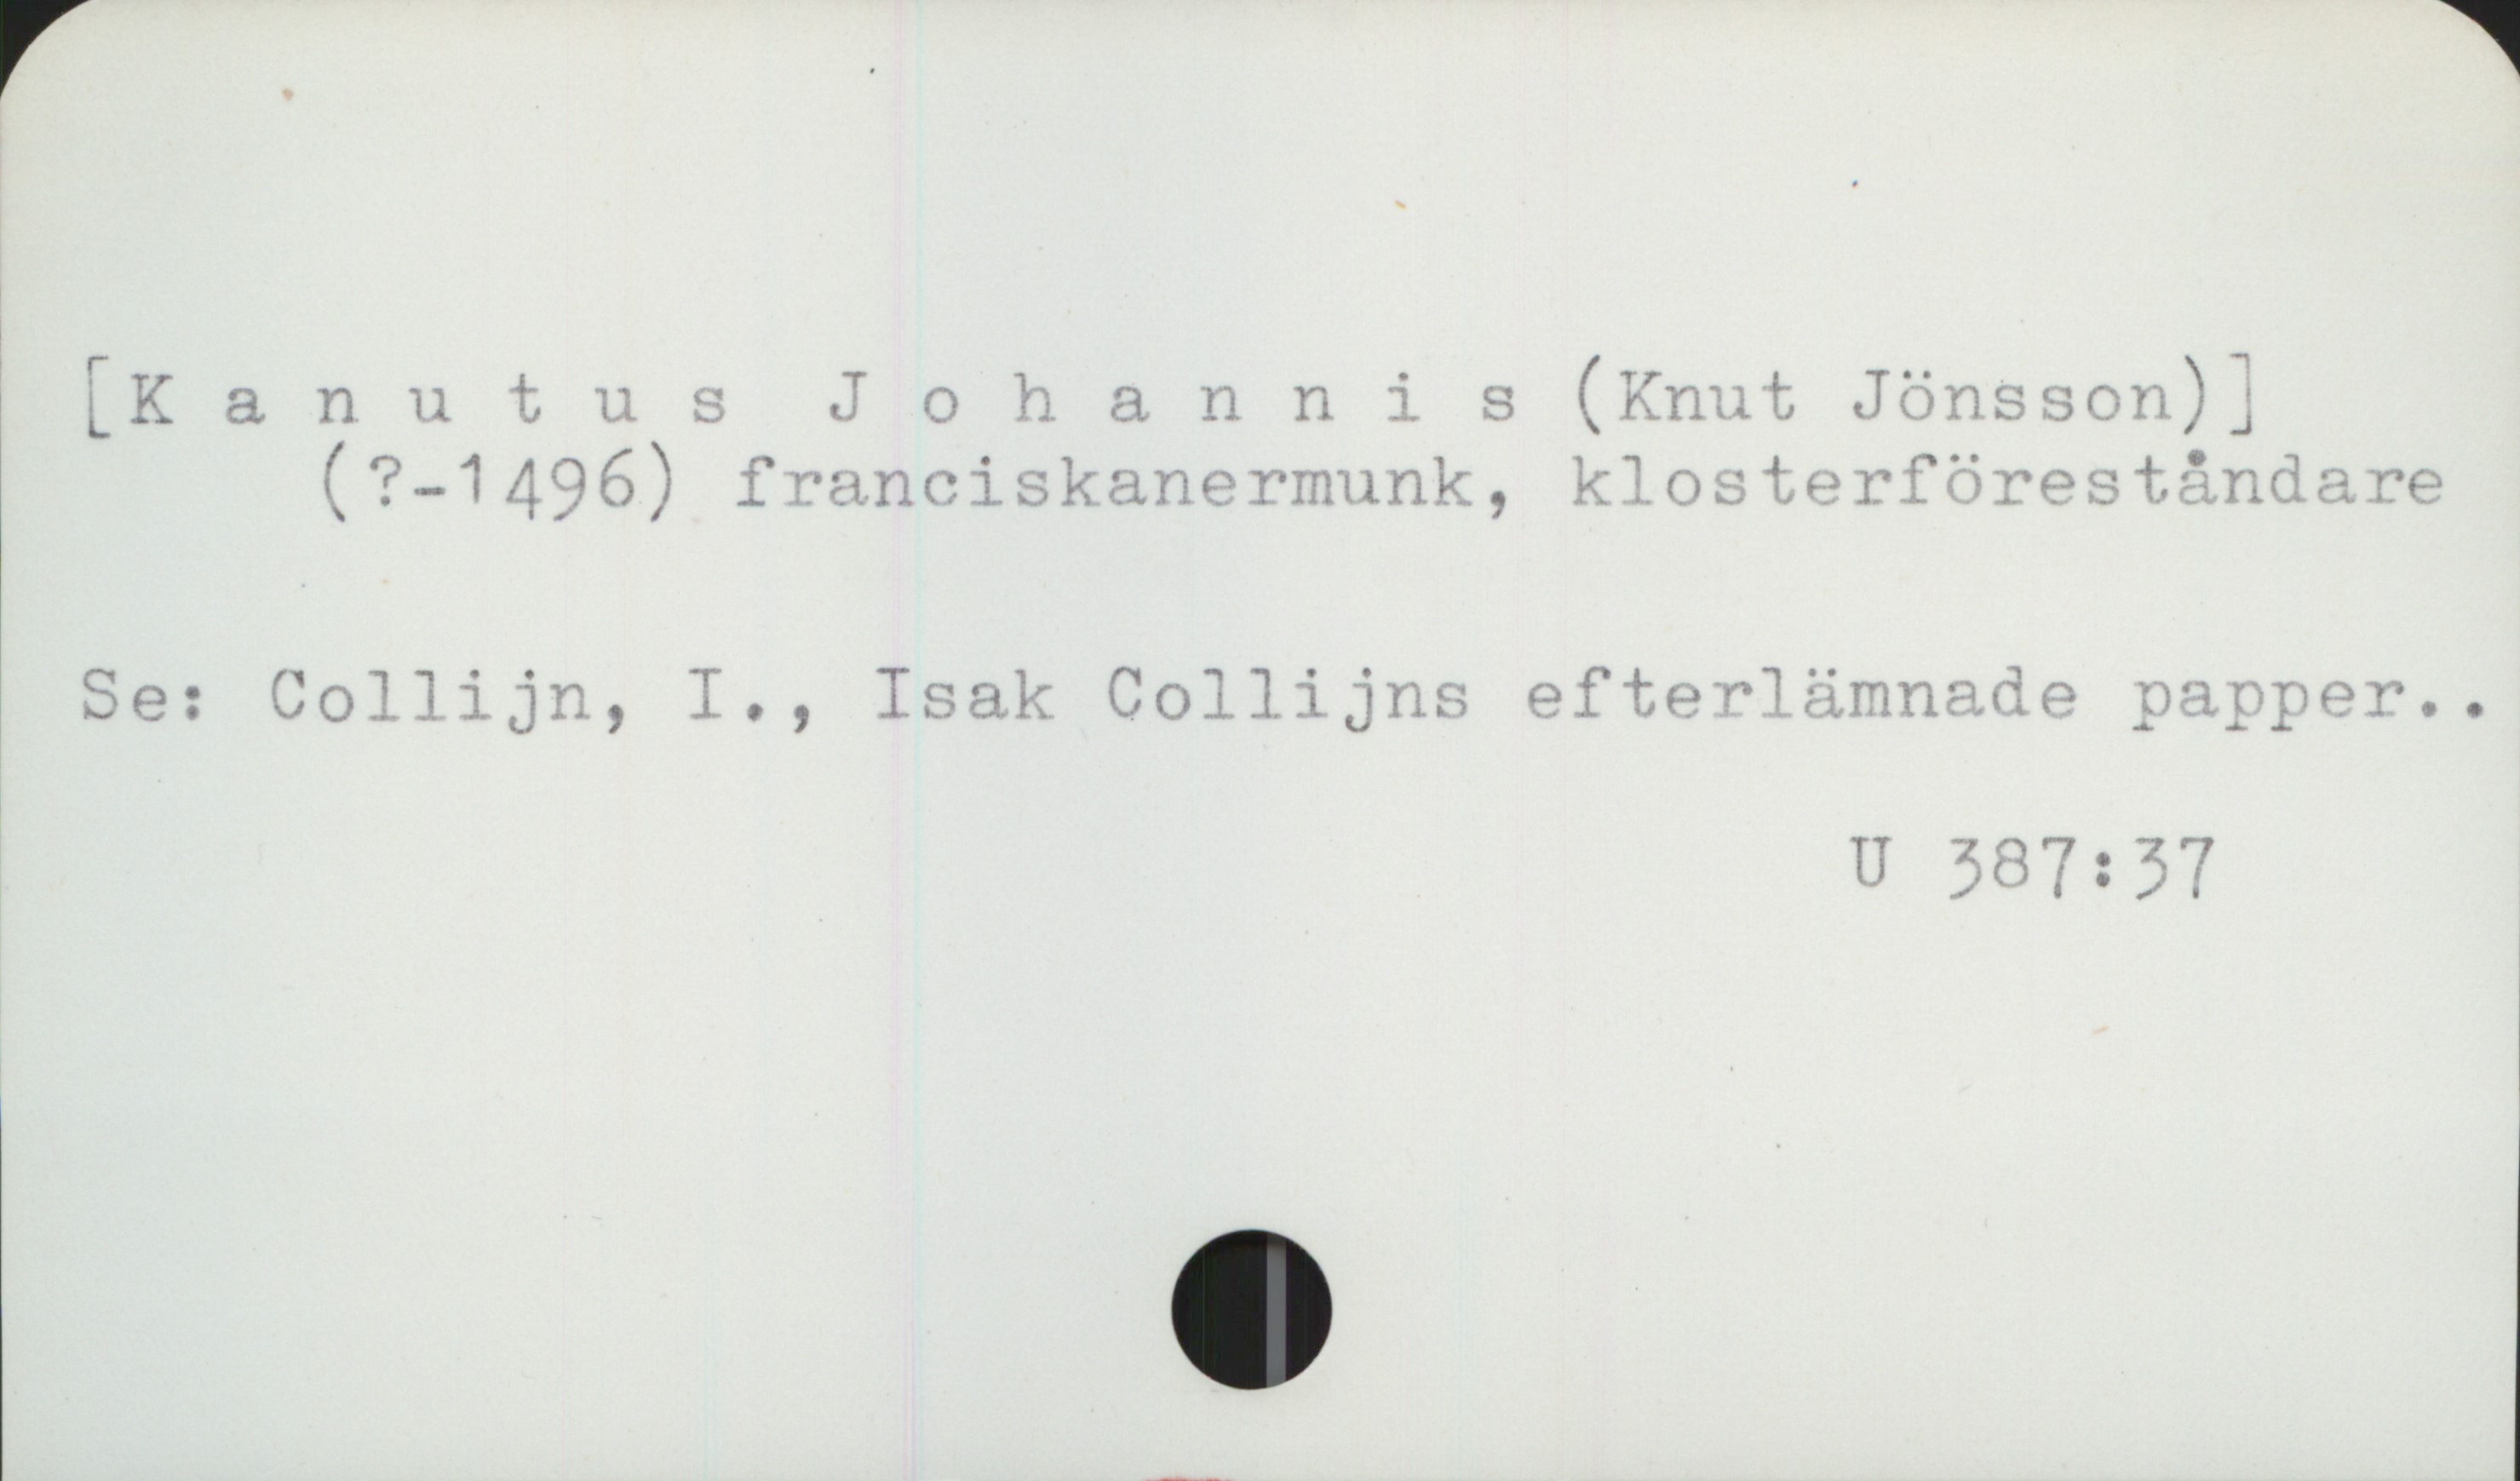  r * Tr . .". . 7
LKanutus Johannis (Knut Jönsson);
(?-1496) franciskanermunk, klosterförestånda re
Se: Collijn, I., Isak Collijns efterlämnade »arnper..
U 287: 37

